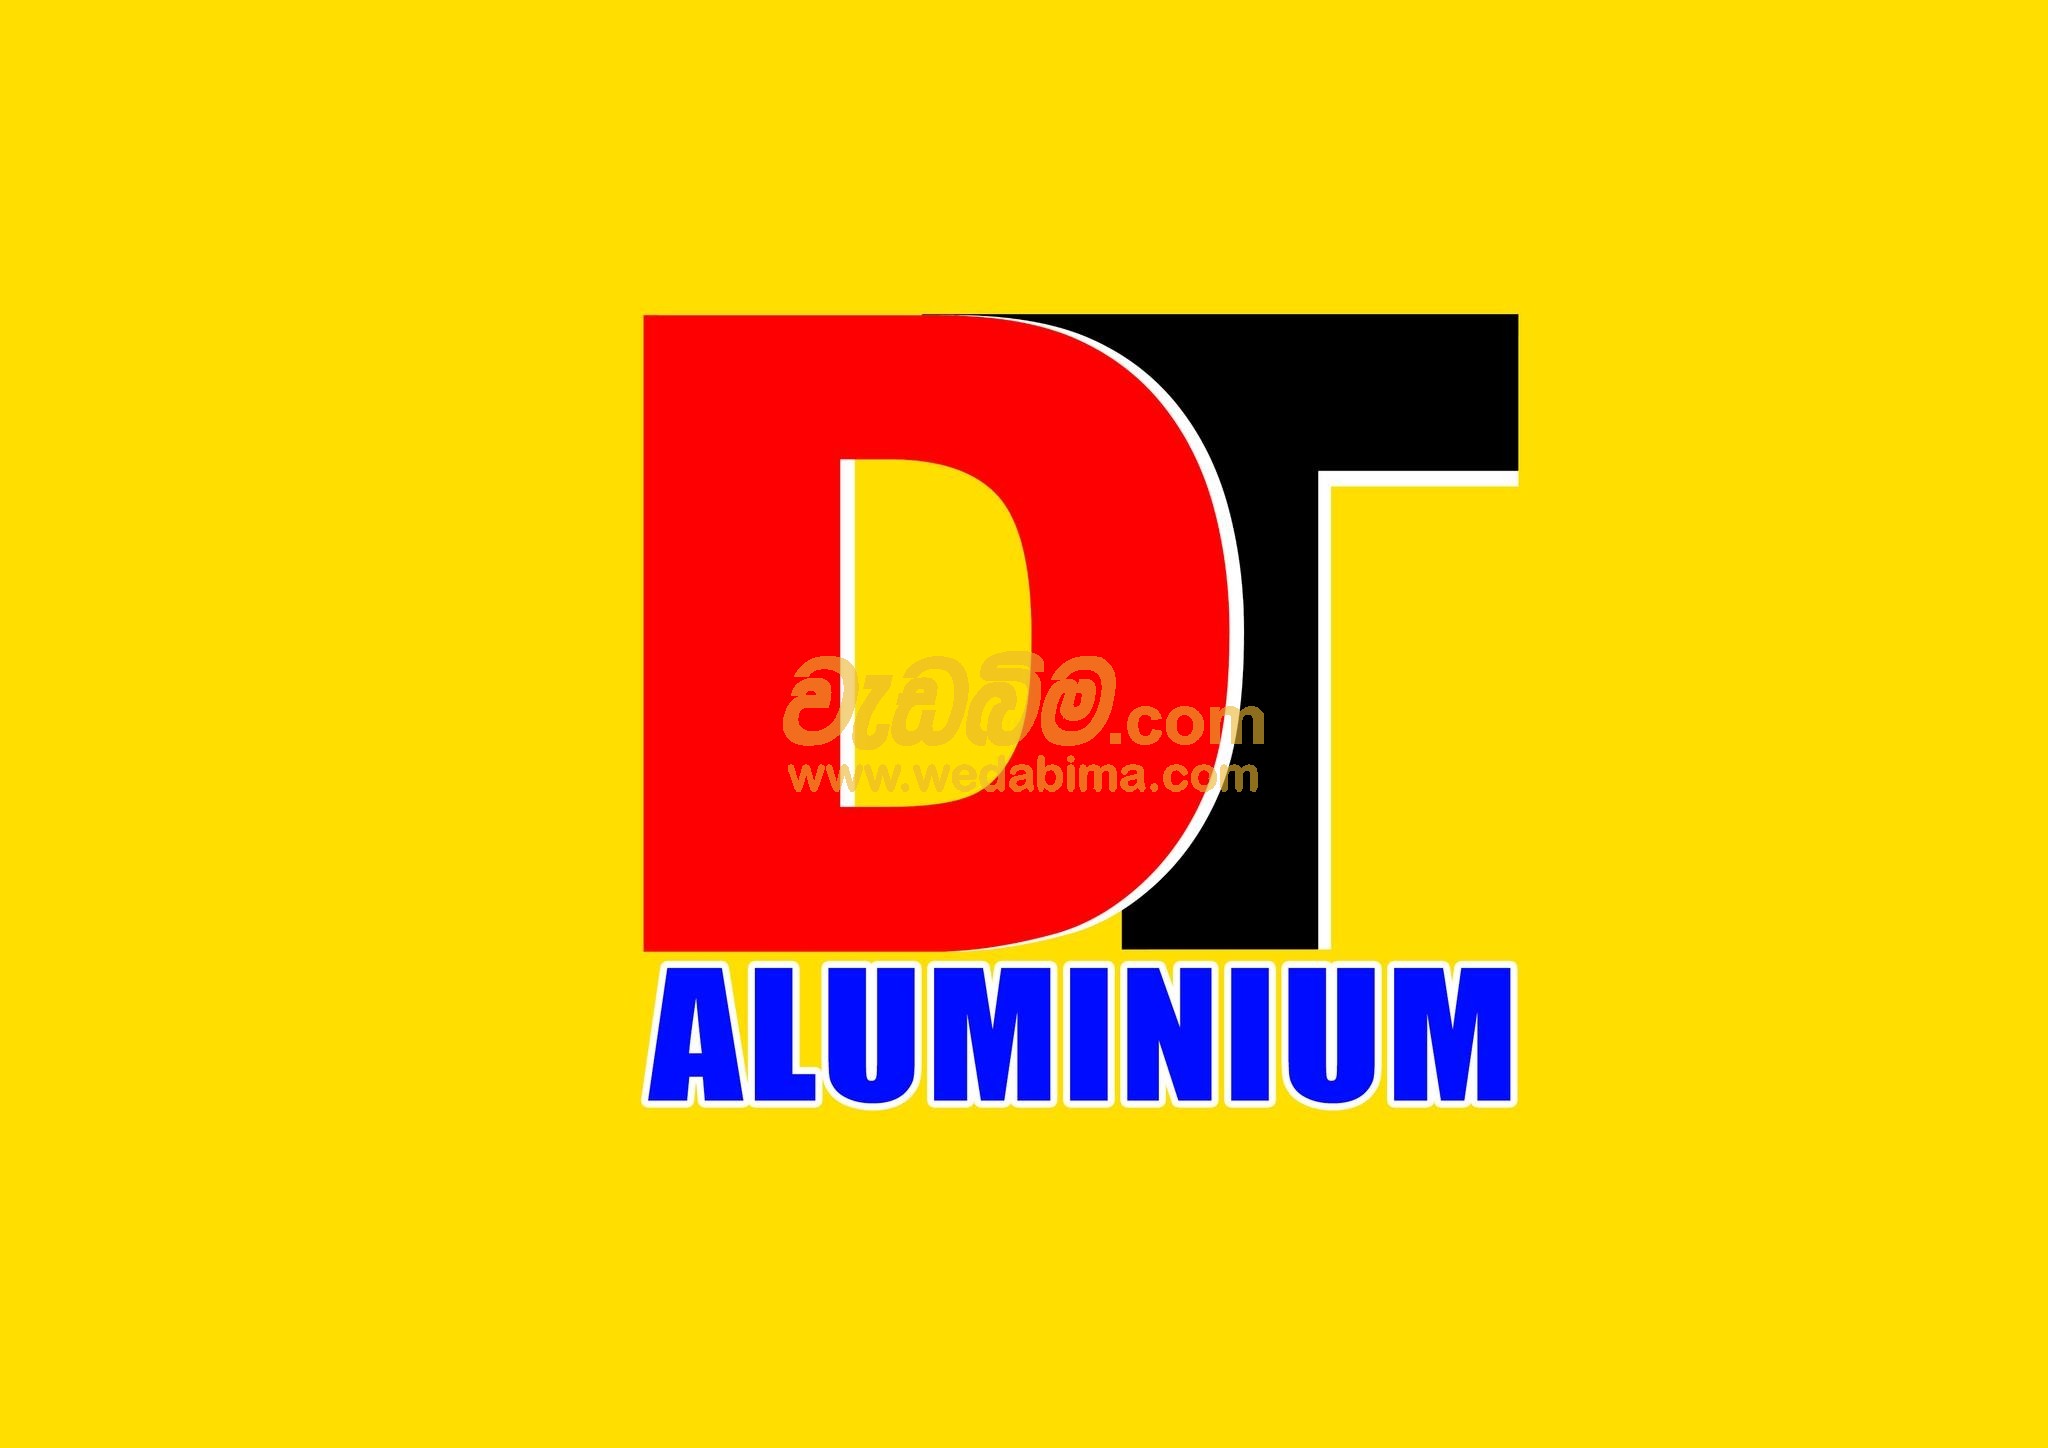 DT Aluminium